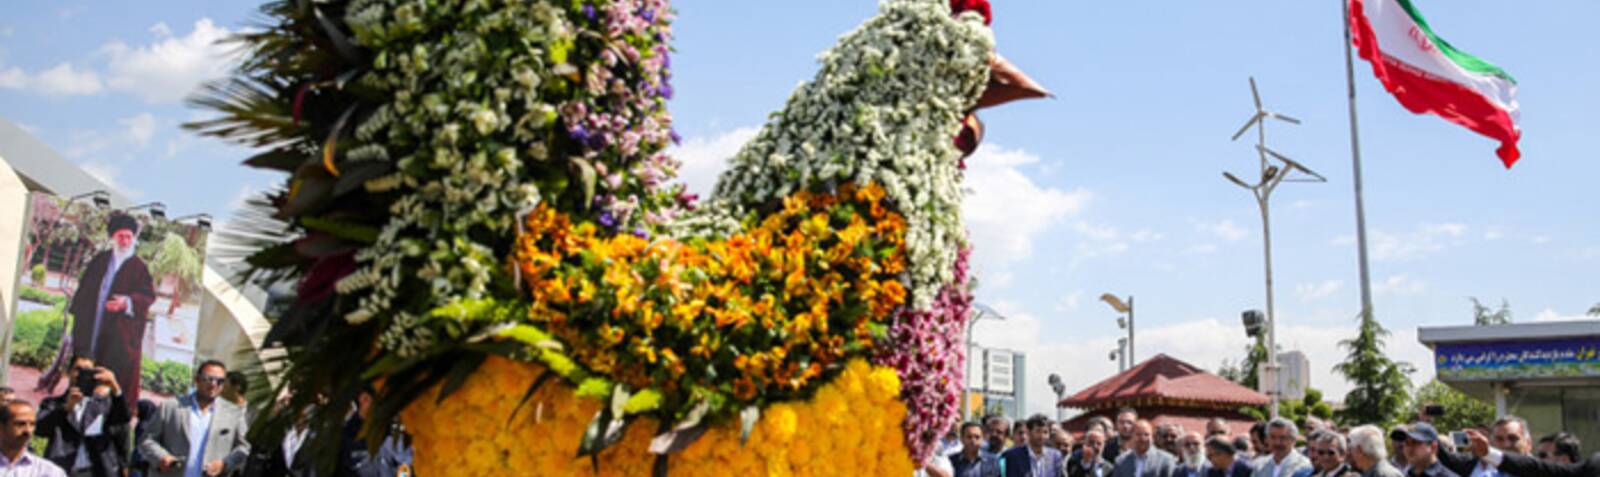 جشنواره گل در هلند ایران